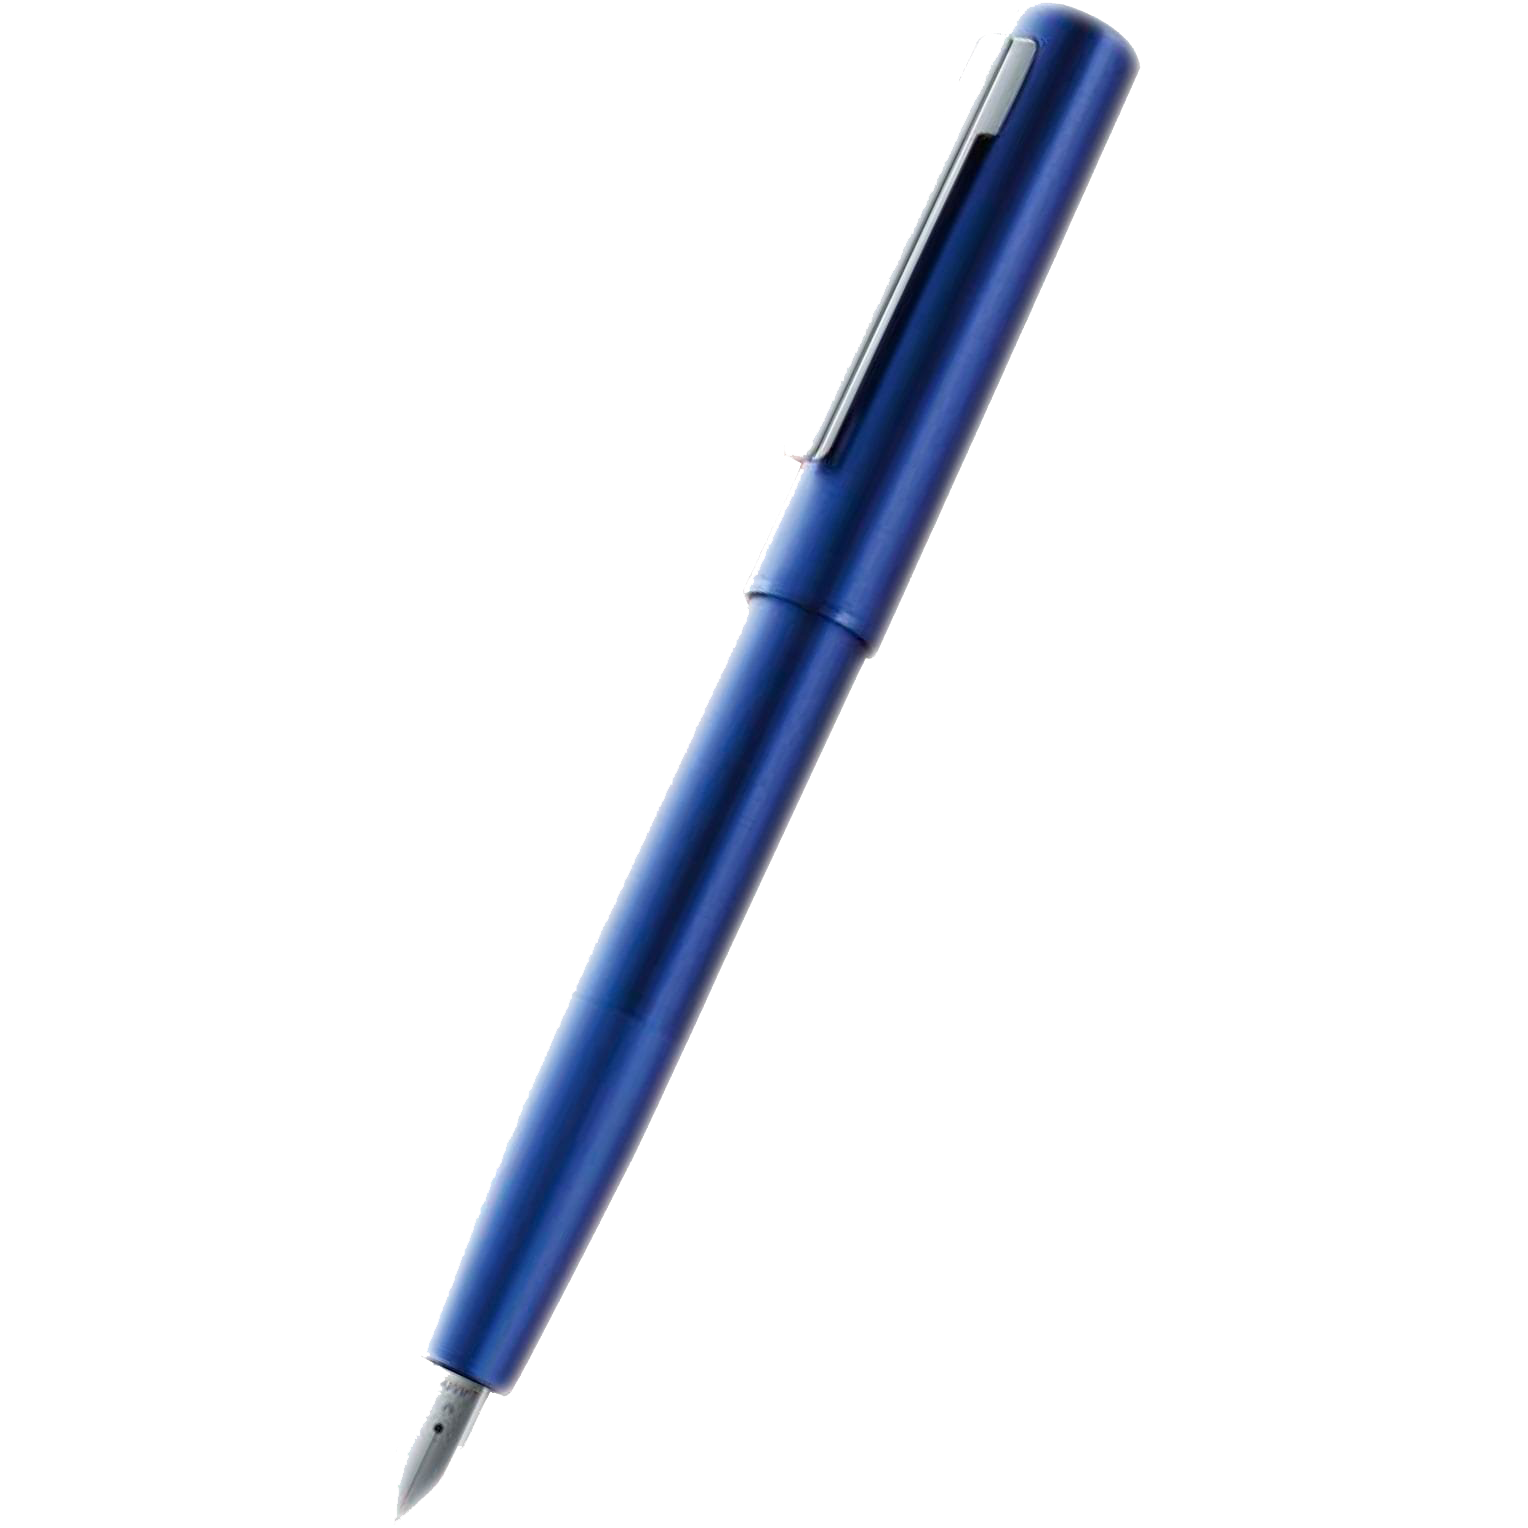 Blue pens. Blue Pen. S Pen синий. Blue Pen for Kids. ARTSBY Blue Pen.